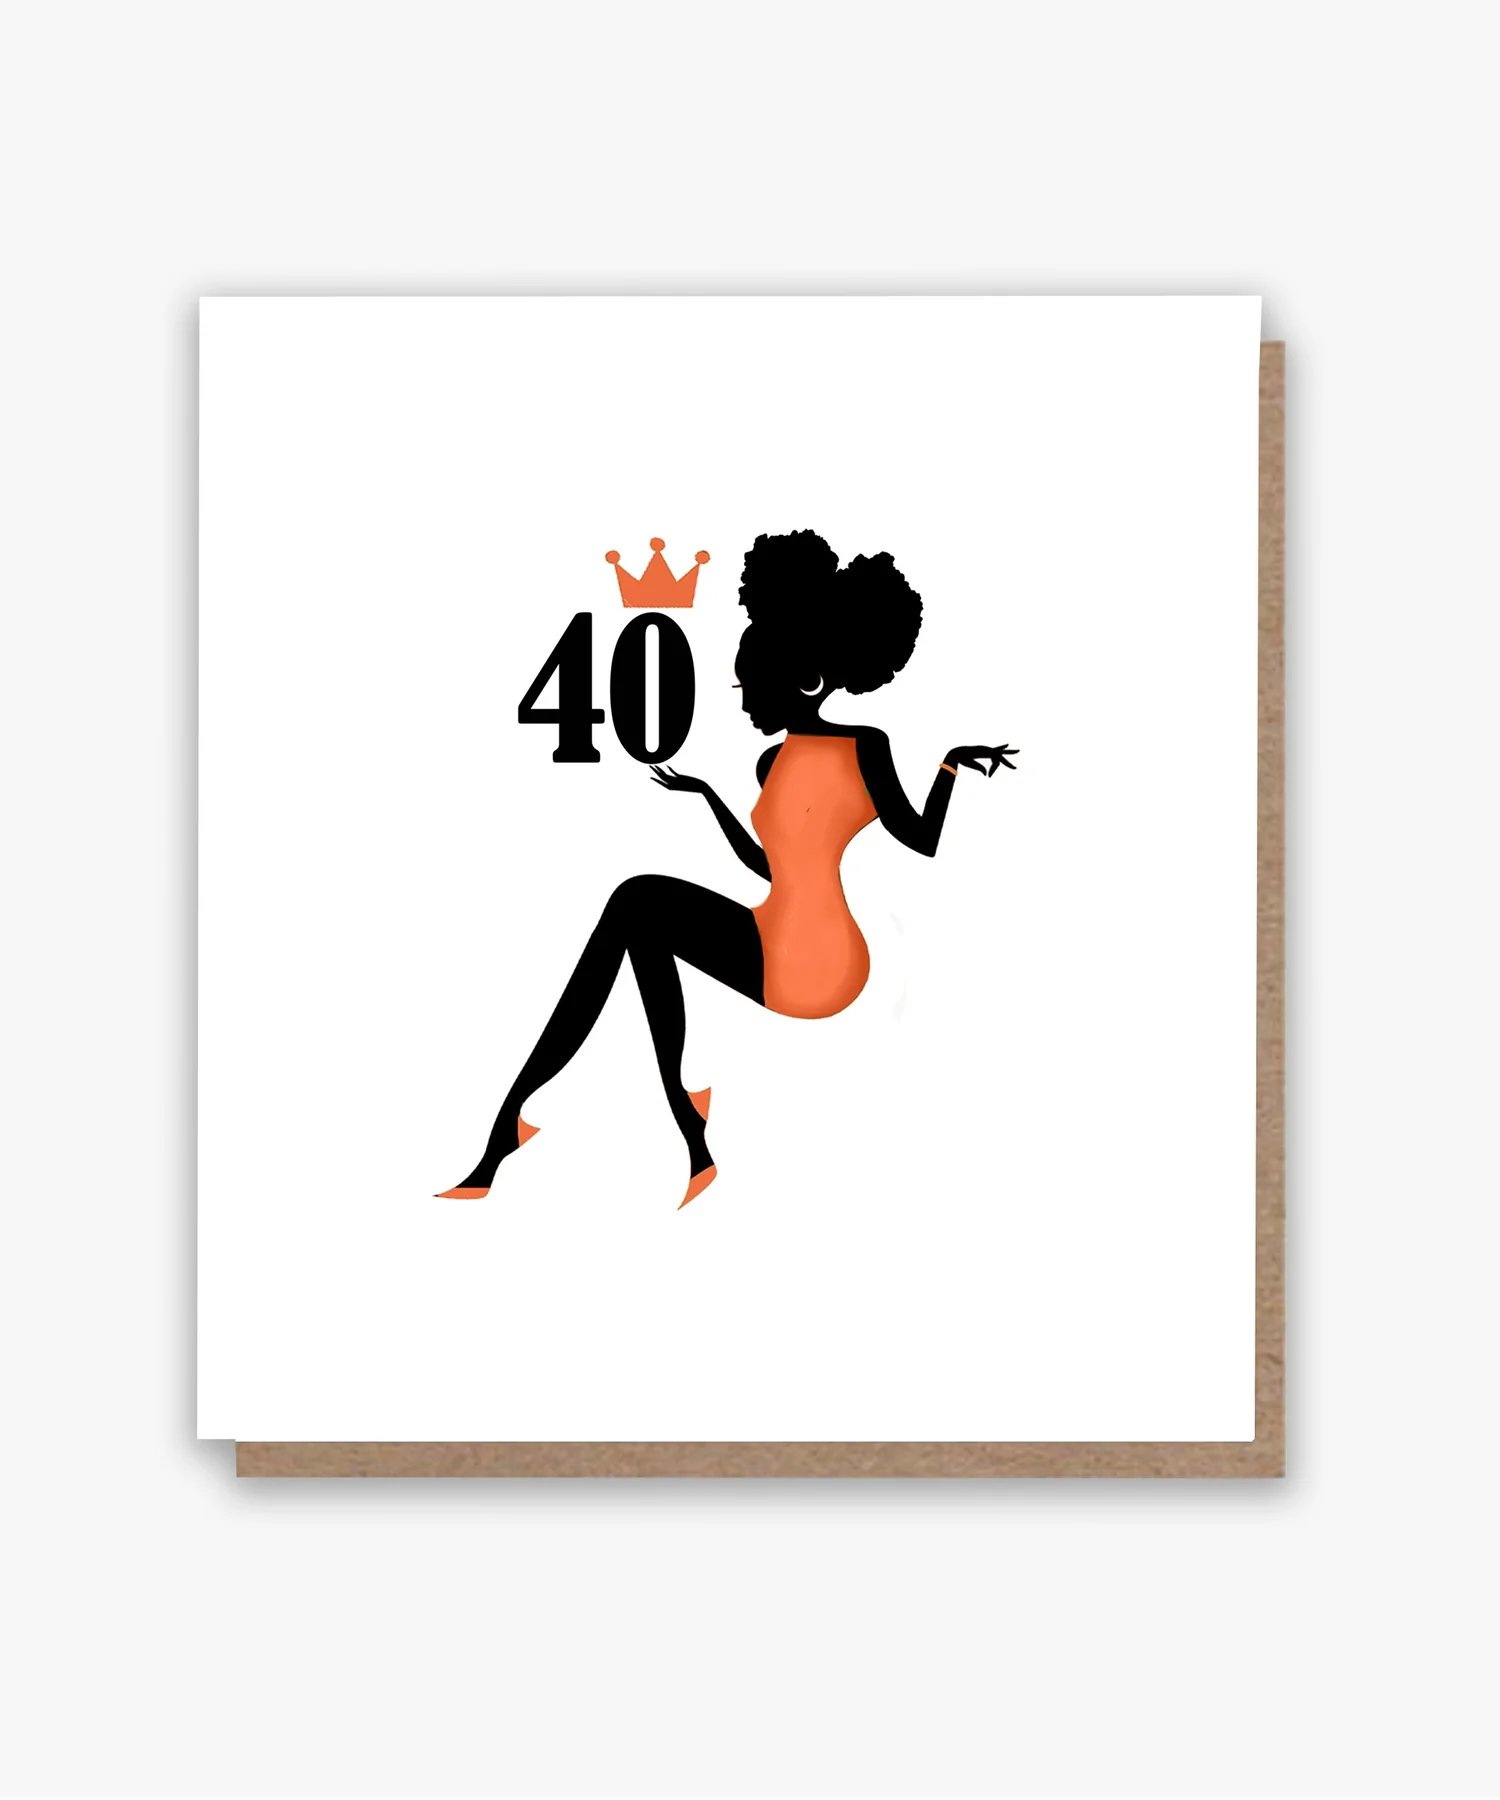 Happy 40th! (O) Birthday Card